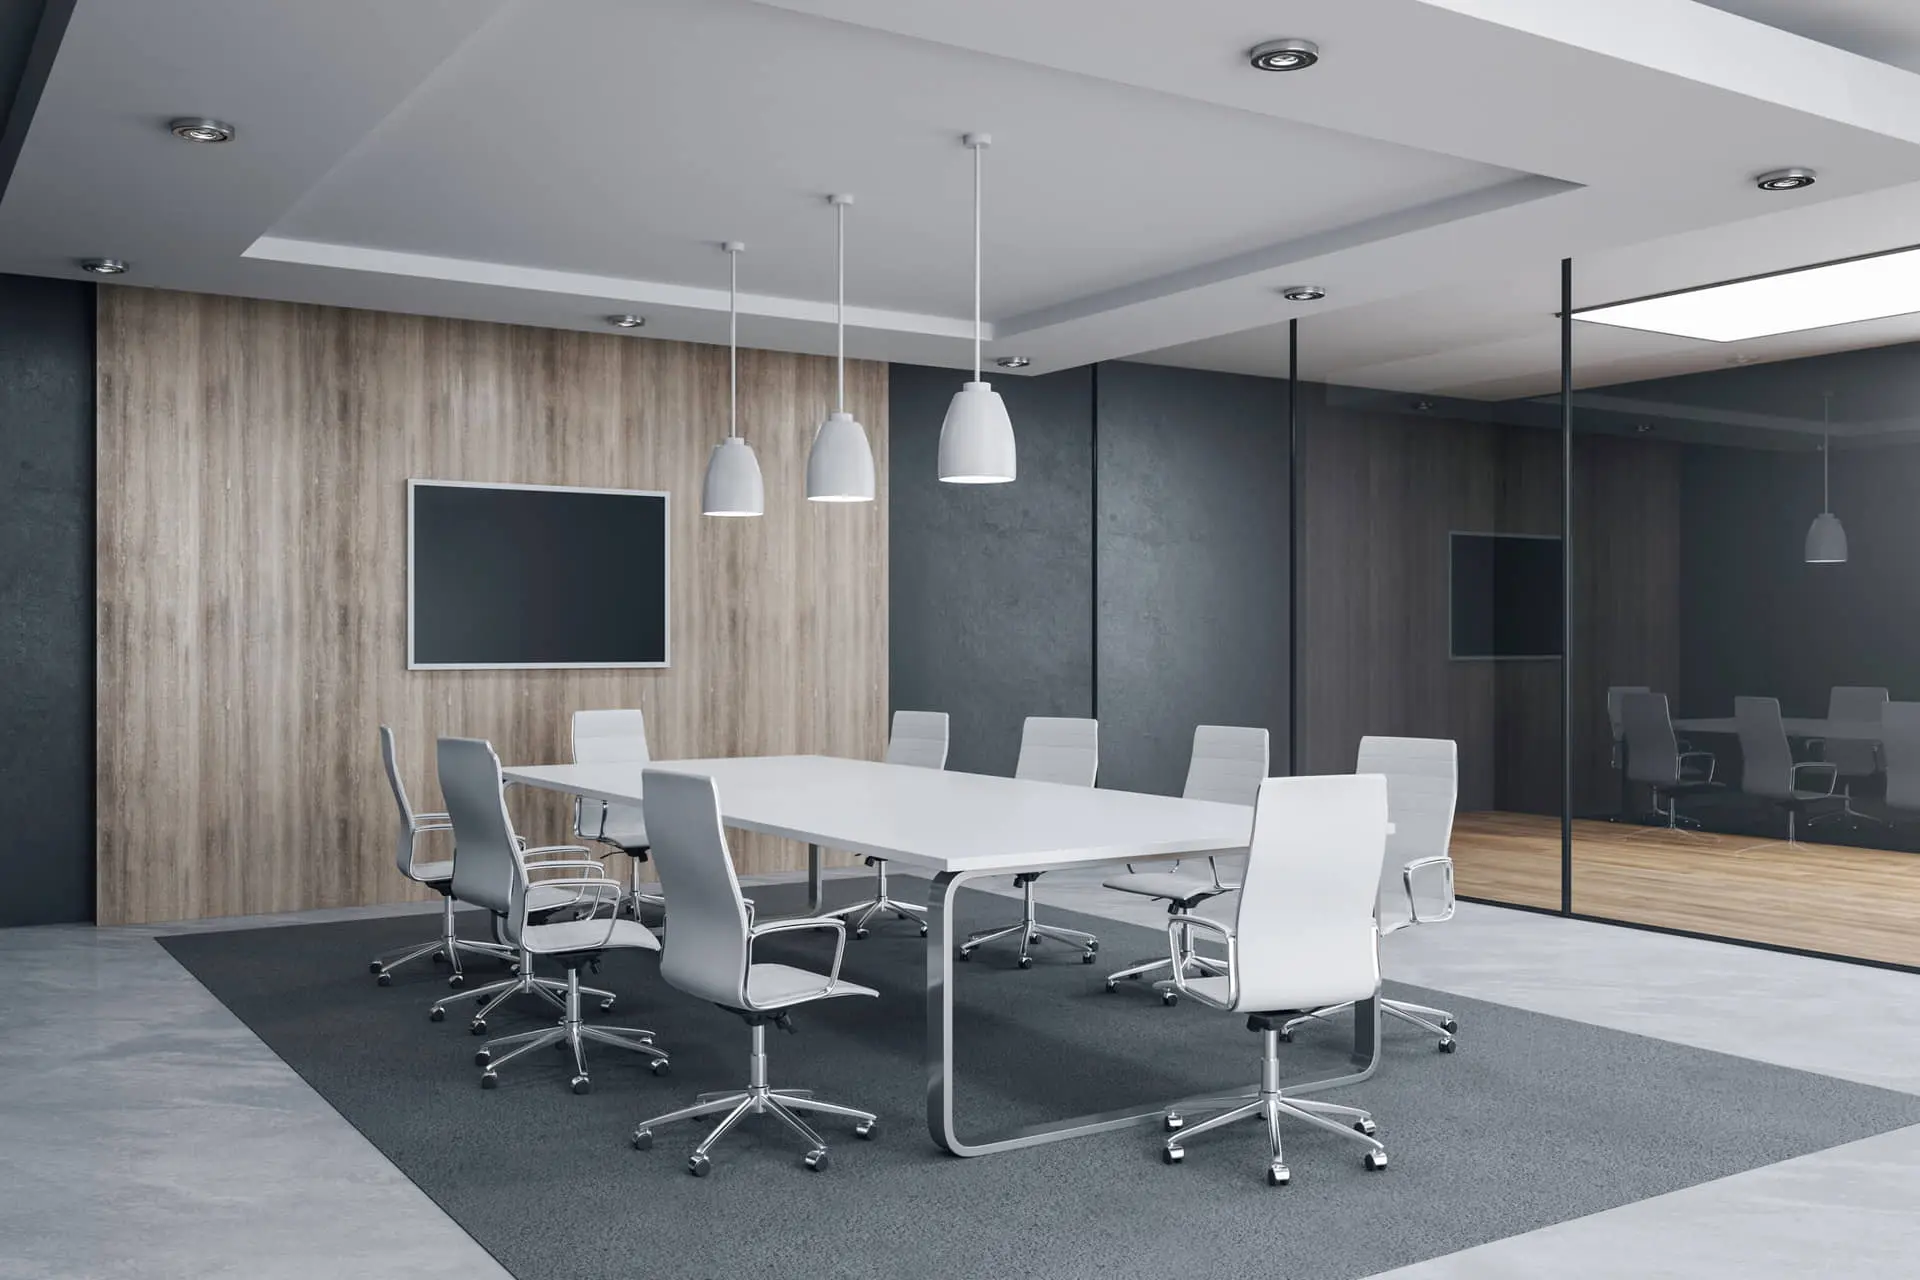 Sastančka soba s mikrocementnim podom sive boje